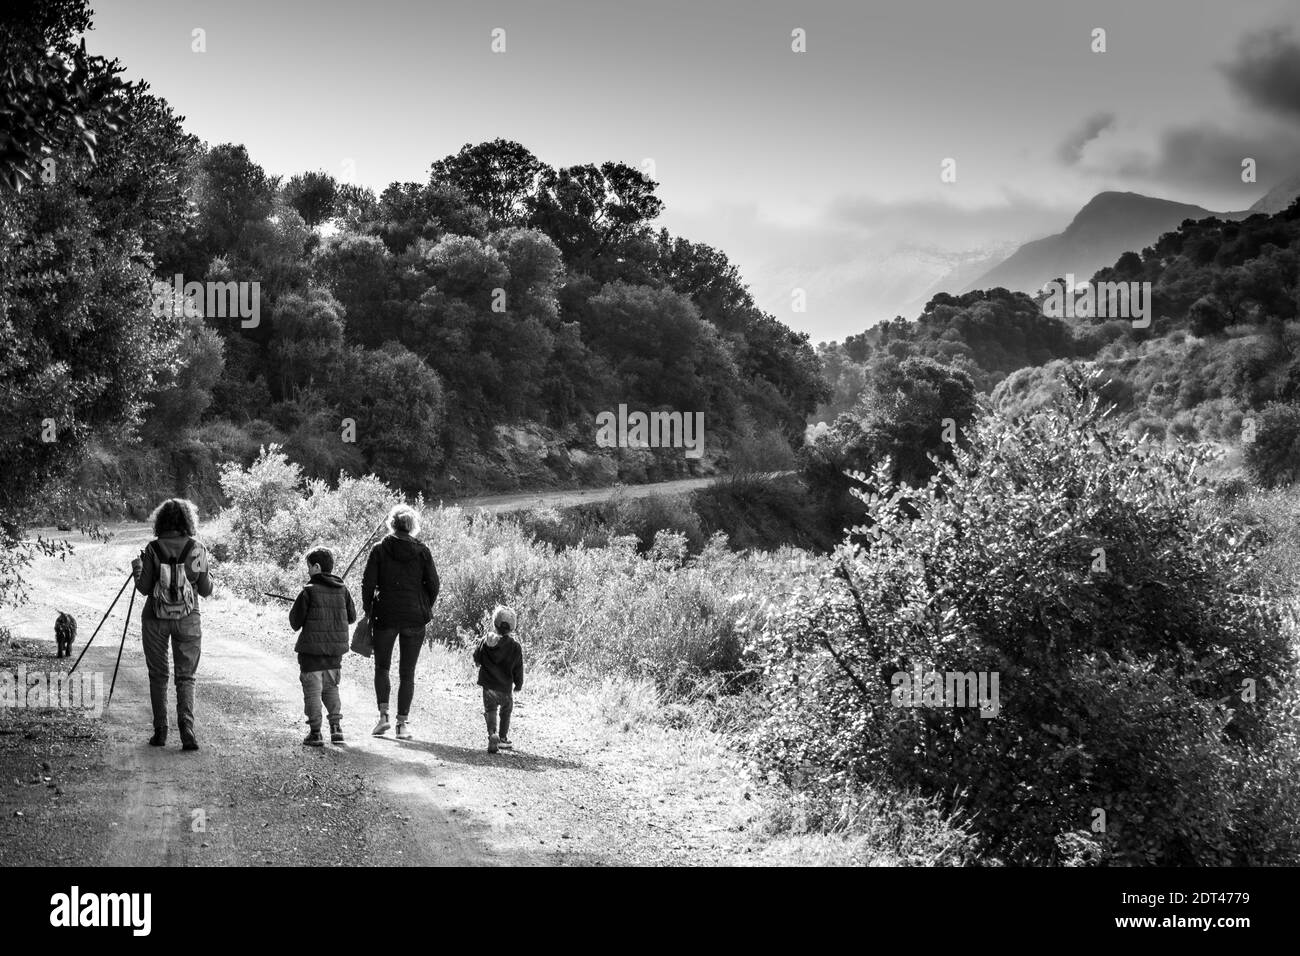 Rückansicht von Wanderern, die auf einem unbefestigten Weg gehen Stockfoto